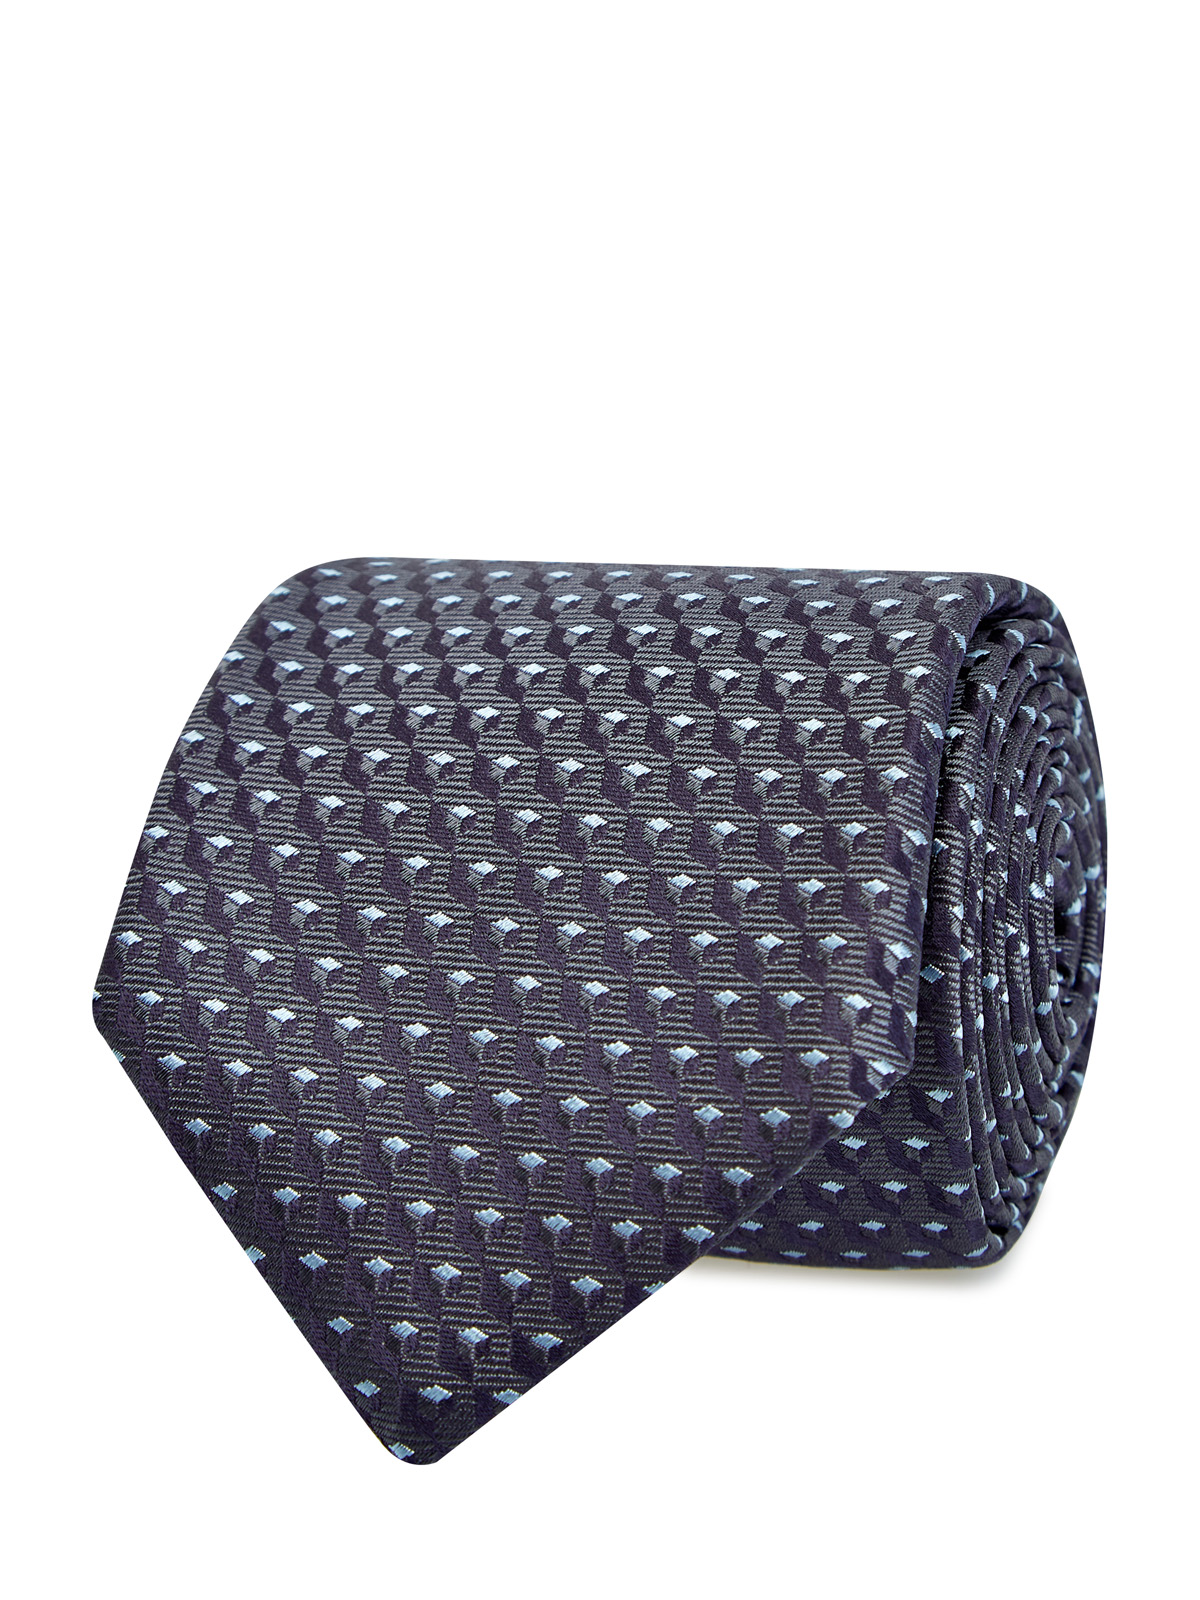 Шелковый галстук с объемным жаккардовым принтом CANALI серого цвета